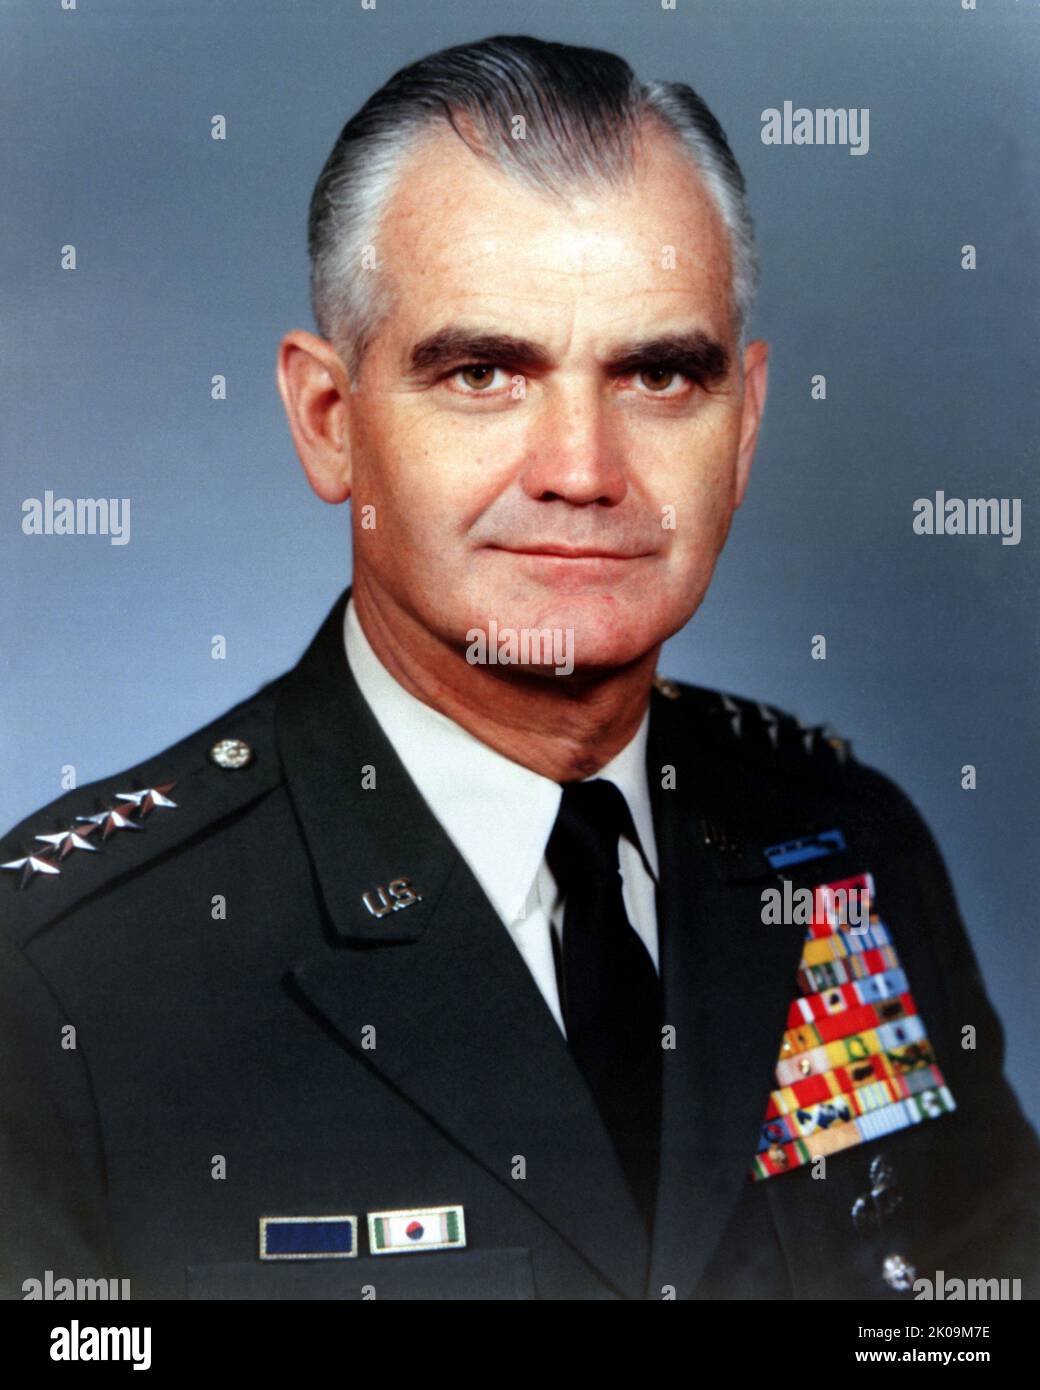 William Childs Westmoreland (26 marzo 1914 – 18 luglio 2005) è stato un generale dell'esercito degli Stati Uniti, in particolare comandante delle forze degli Stati Uniti durante la guerra del Vietnam dal 1964 al 1968. Ha servito come capo di stato maggiore dell'esercito degli Stati Uniti dal 1968 al 1972. Foto Stock